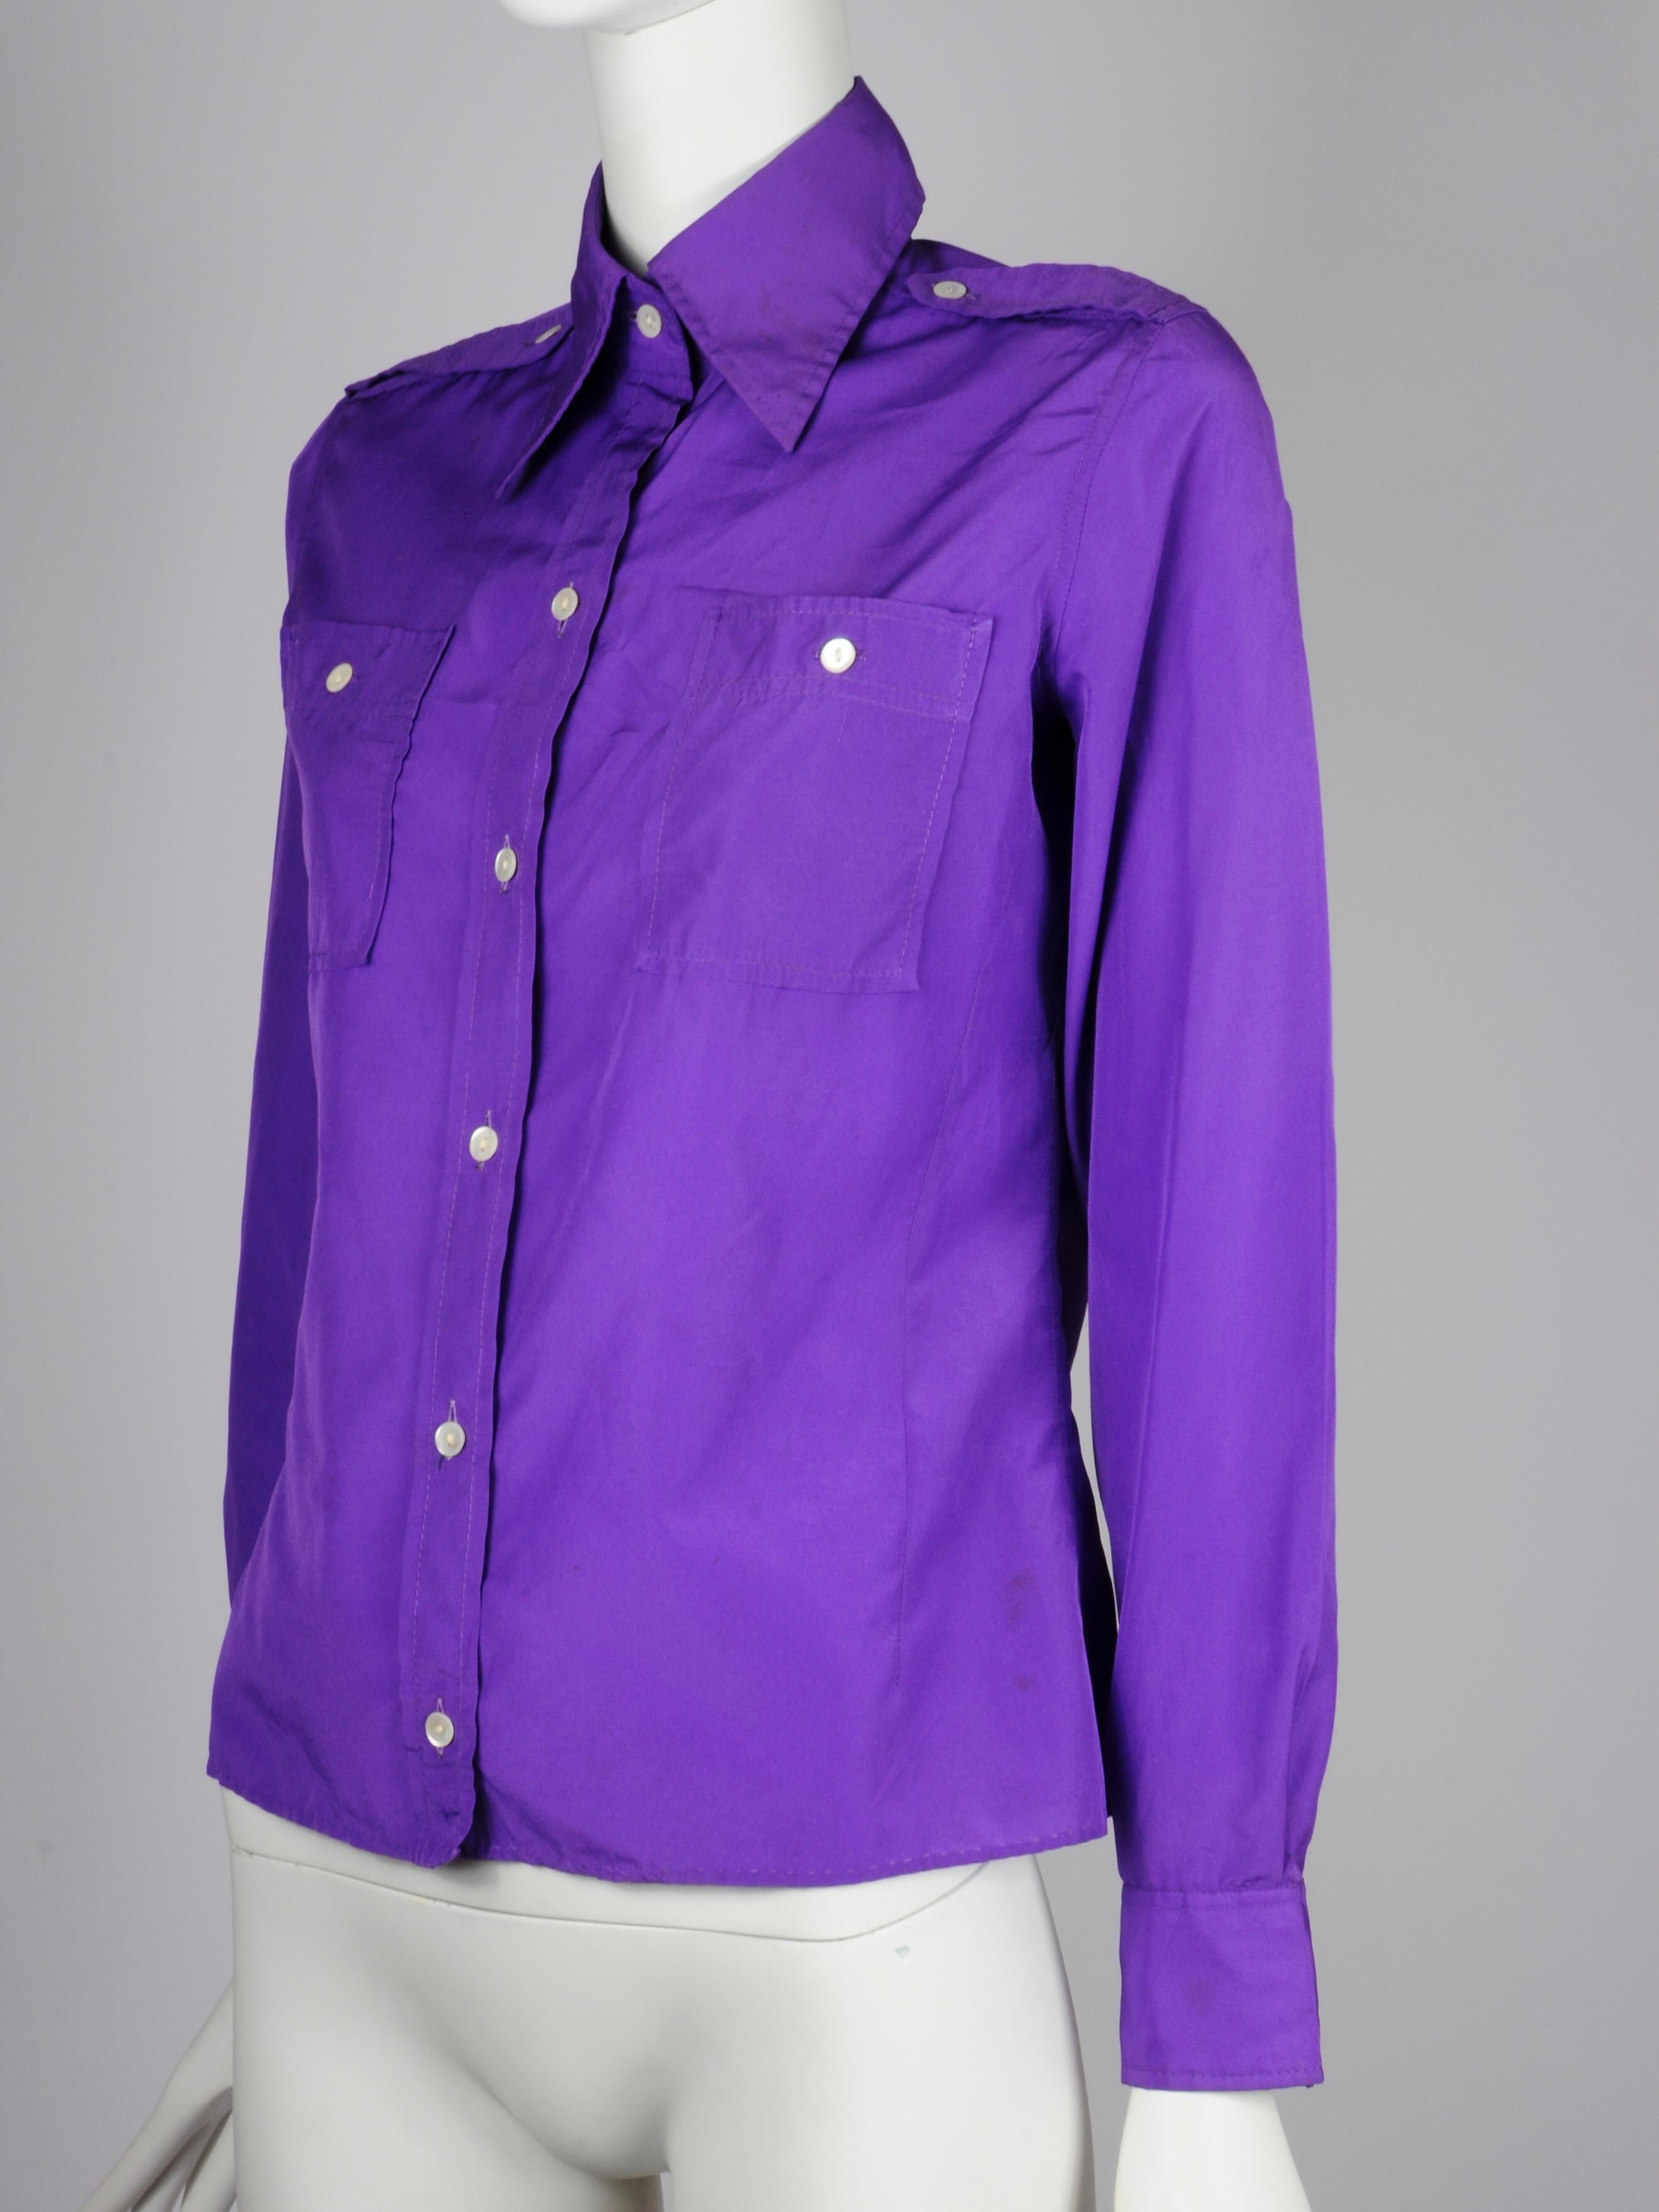 Chemisier violet Ted Lapidus des années 1970 avec détails d'épaules et poches de style militaire/uniforme. Le chemisier présente un col typique des années 1970 et une belle teinte violet vif. 

DESCRIPTION DE LA MARQUE
Ted Lapidus a créé sa maison